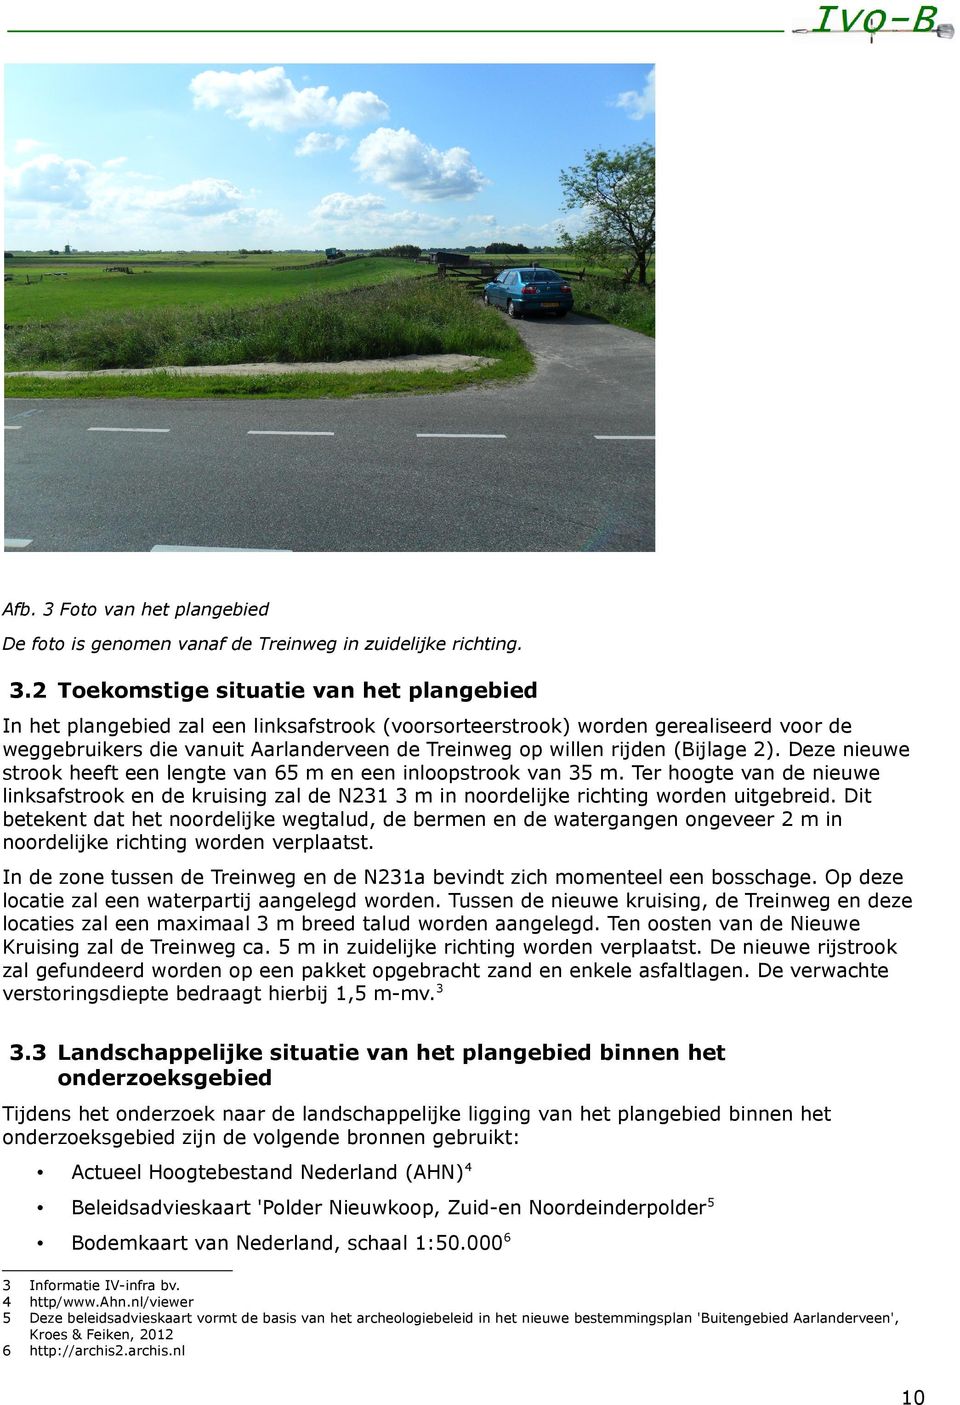 2 Toekomstige situatie van het plangebied In het plangebied zal een linksafstrook (voorsorteerstrook) worden gerealiseerd voor de weggebruikers die vanuit Aarlanderveen de Treinweg op willen rijden